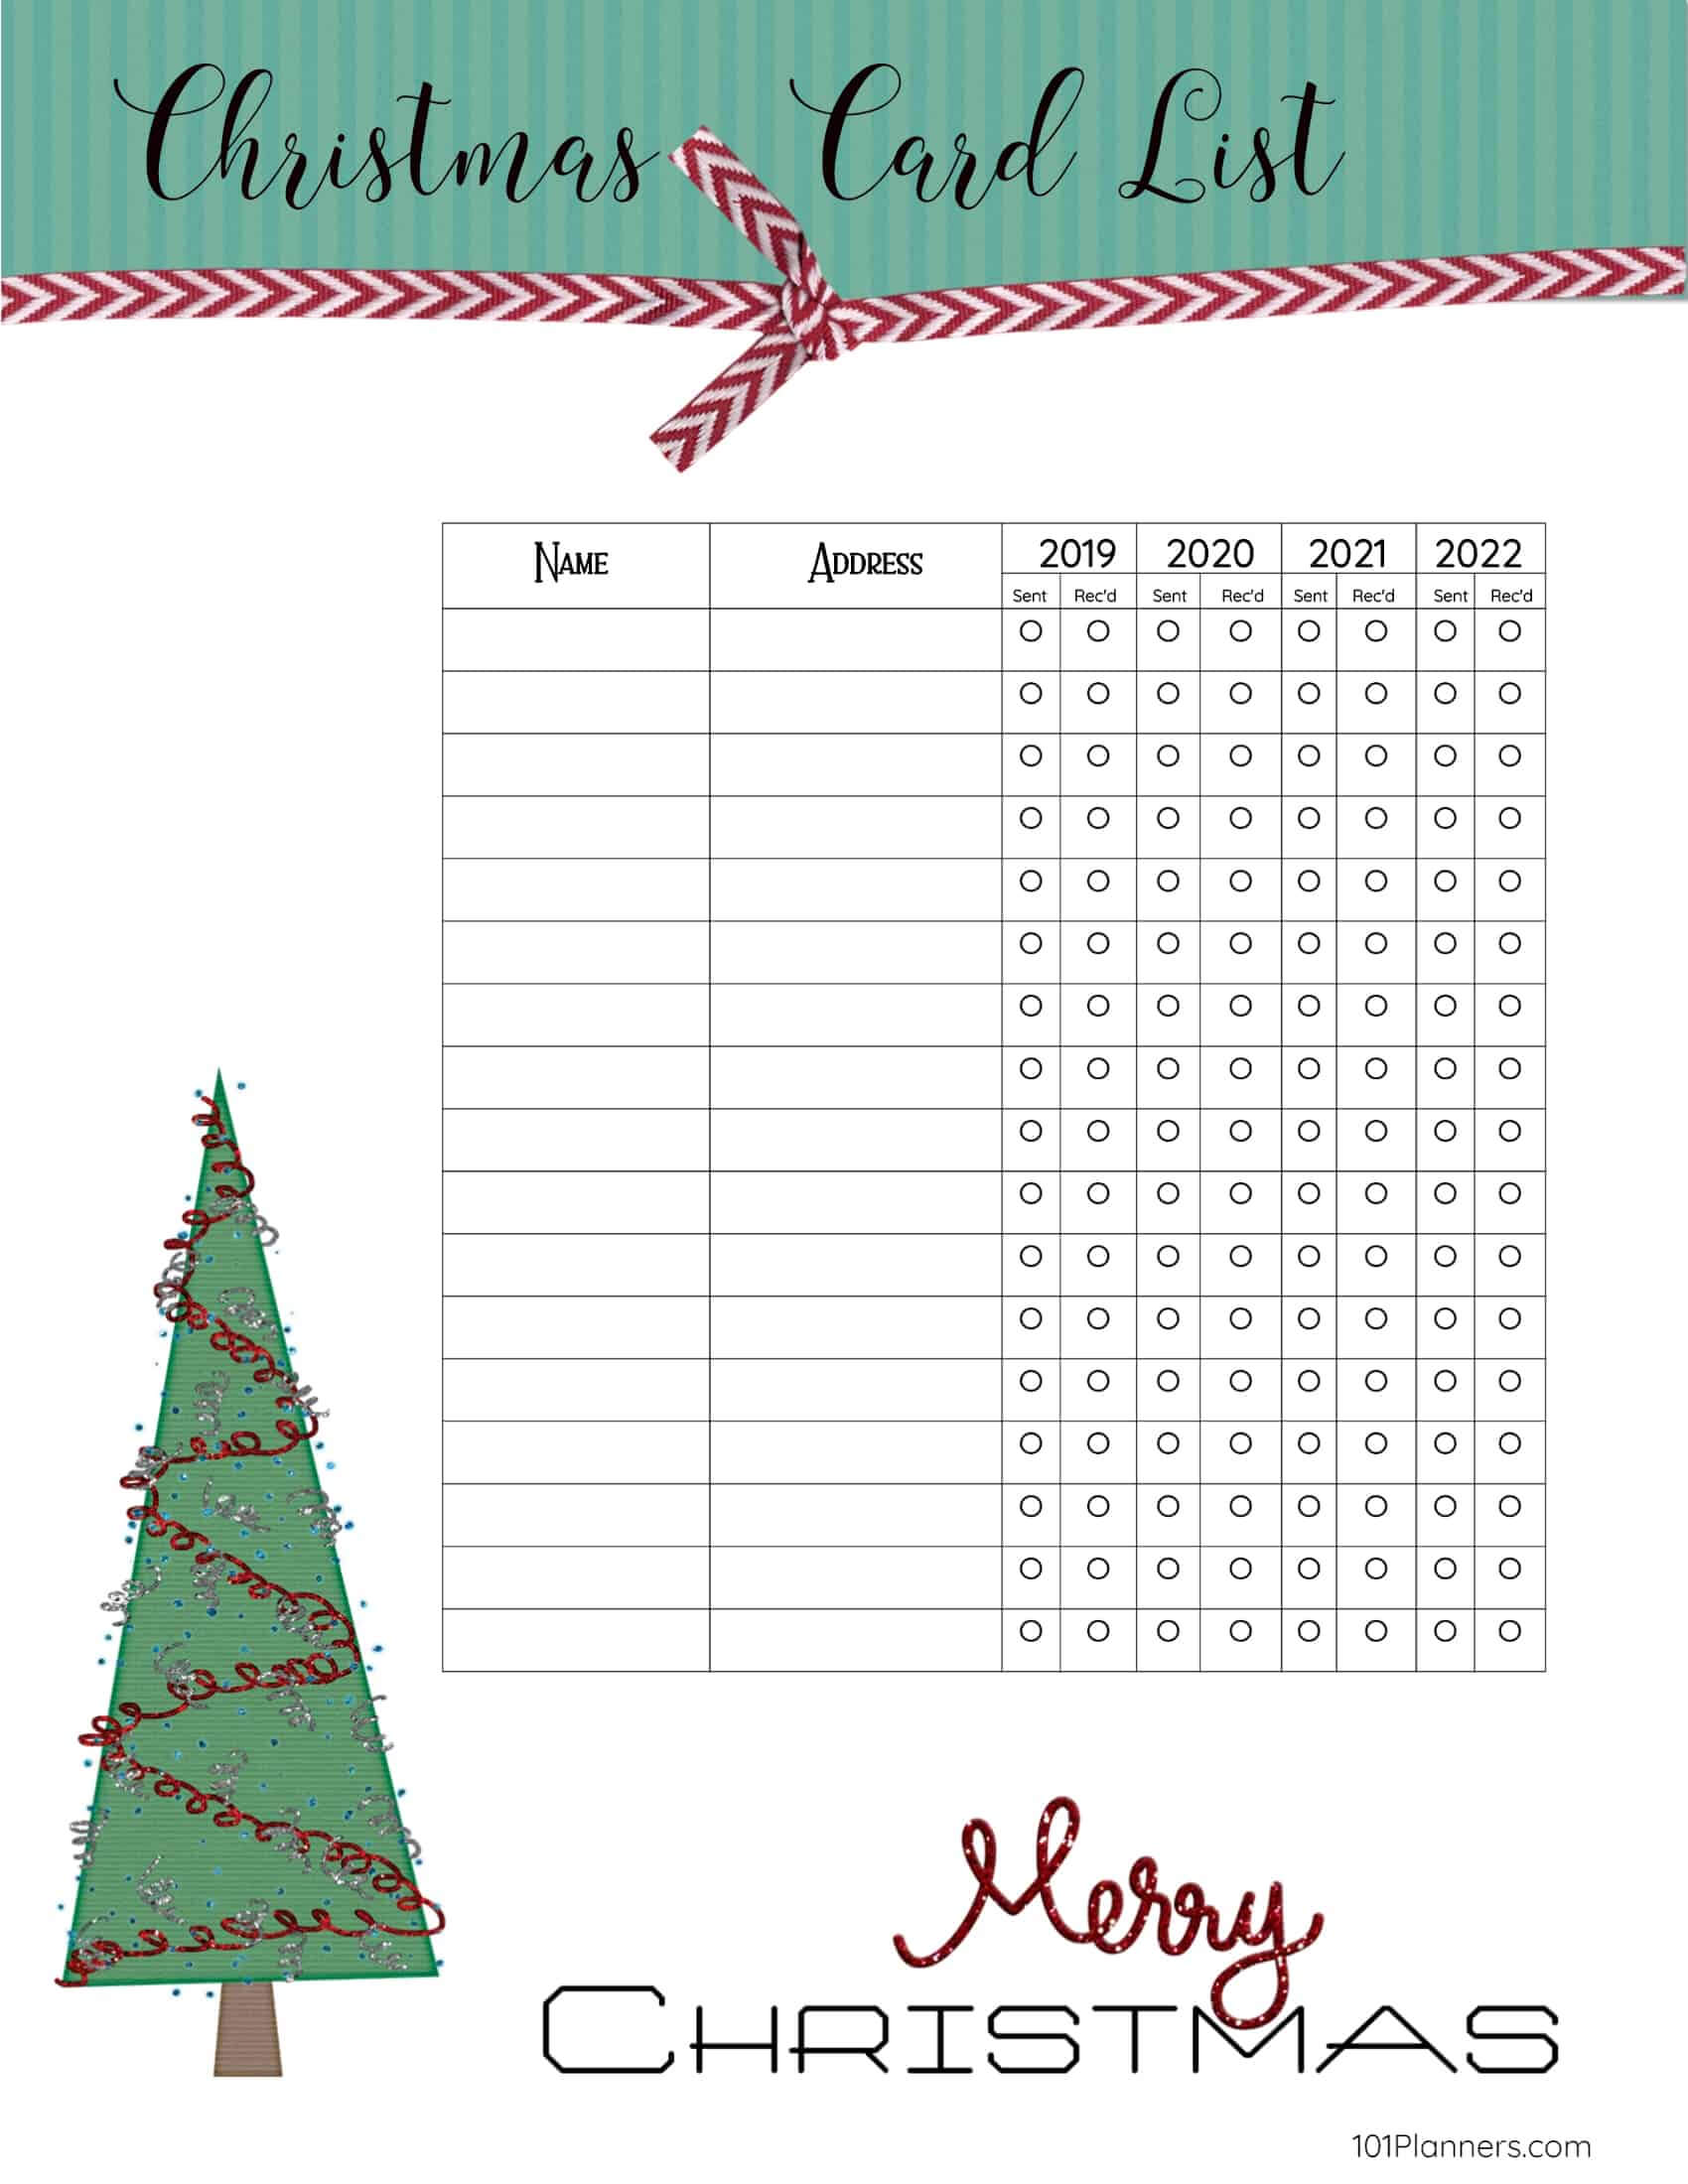 Free Printable Christmas Gift List Template With Christmas Card List Template Professional 